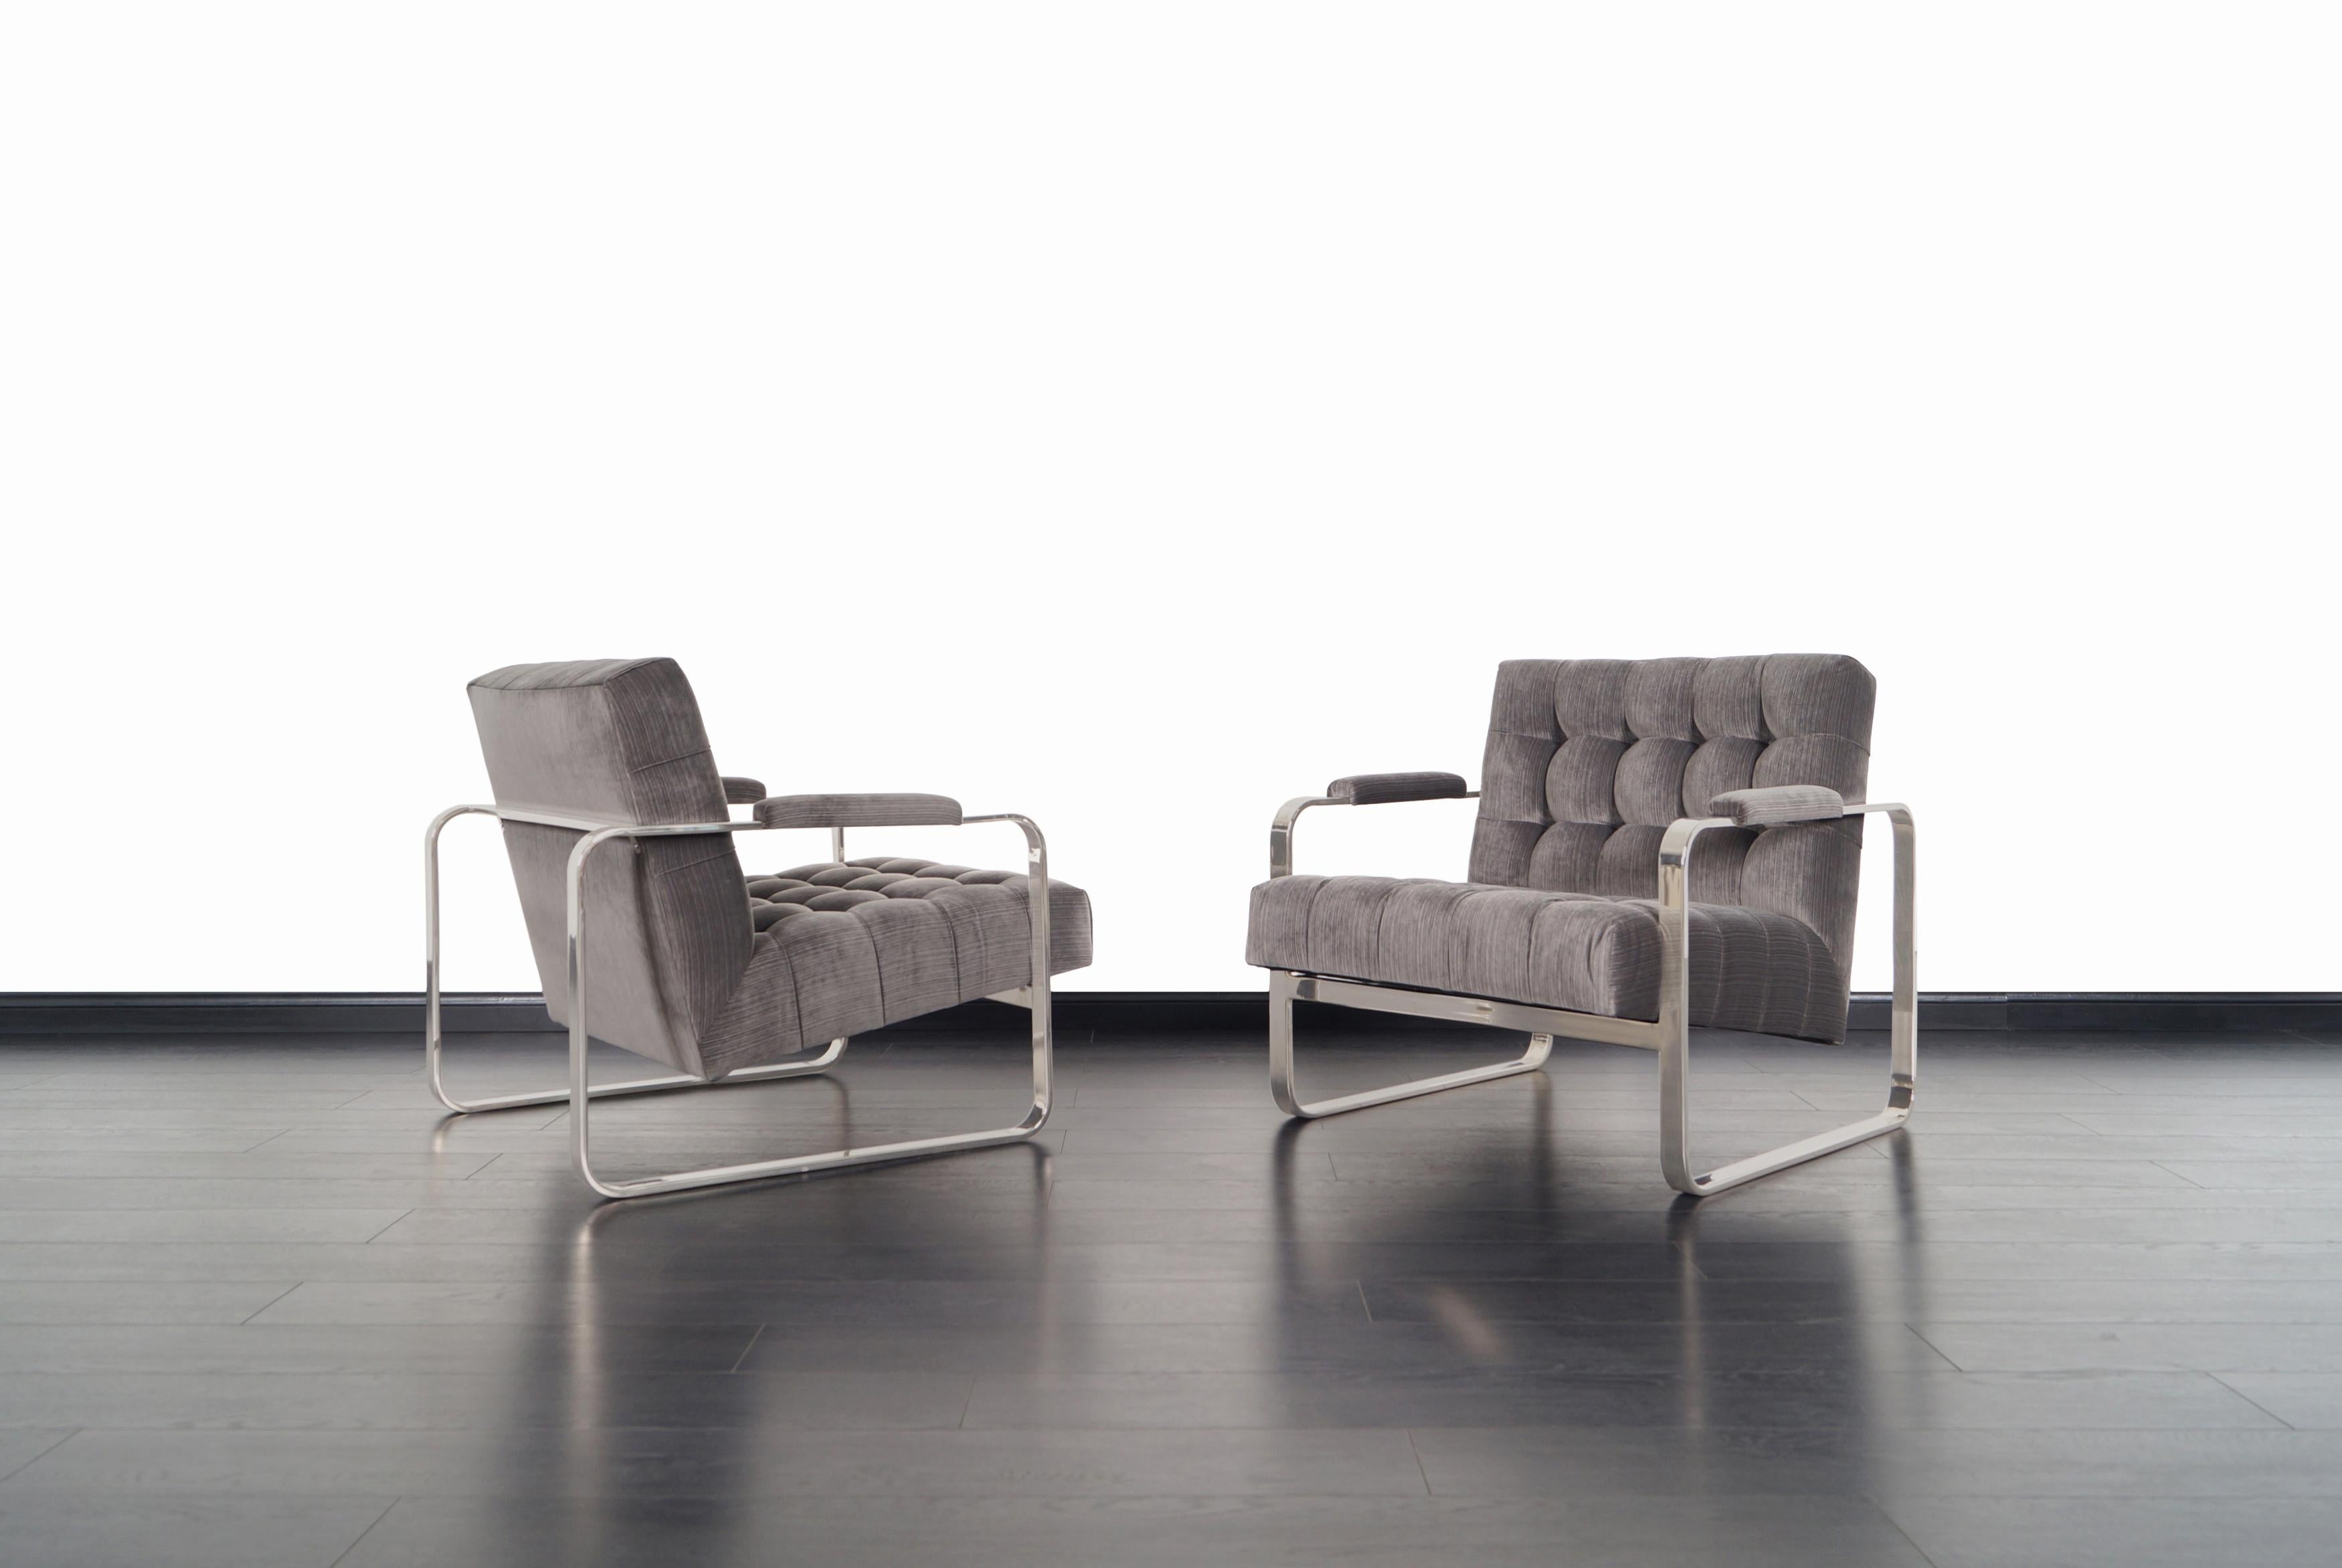 Une paire étonnante de chaises longues vintage en nickel conçues par Milo Baughman pour Thayer Coggin. La façon dont le siège en velours semble flotter à l'intérieur du cadre nickelé donne au design une perspective étonnante sous tous les angles.